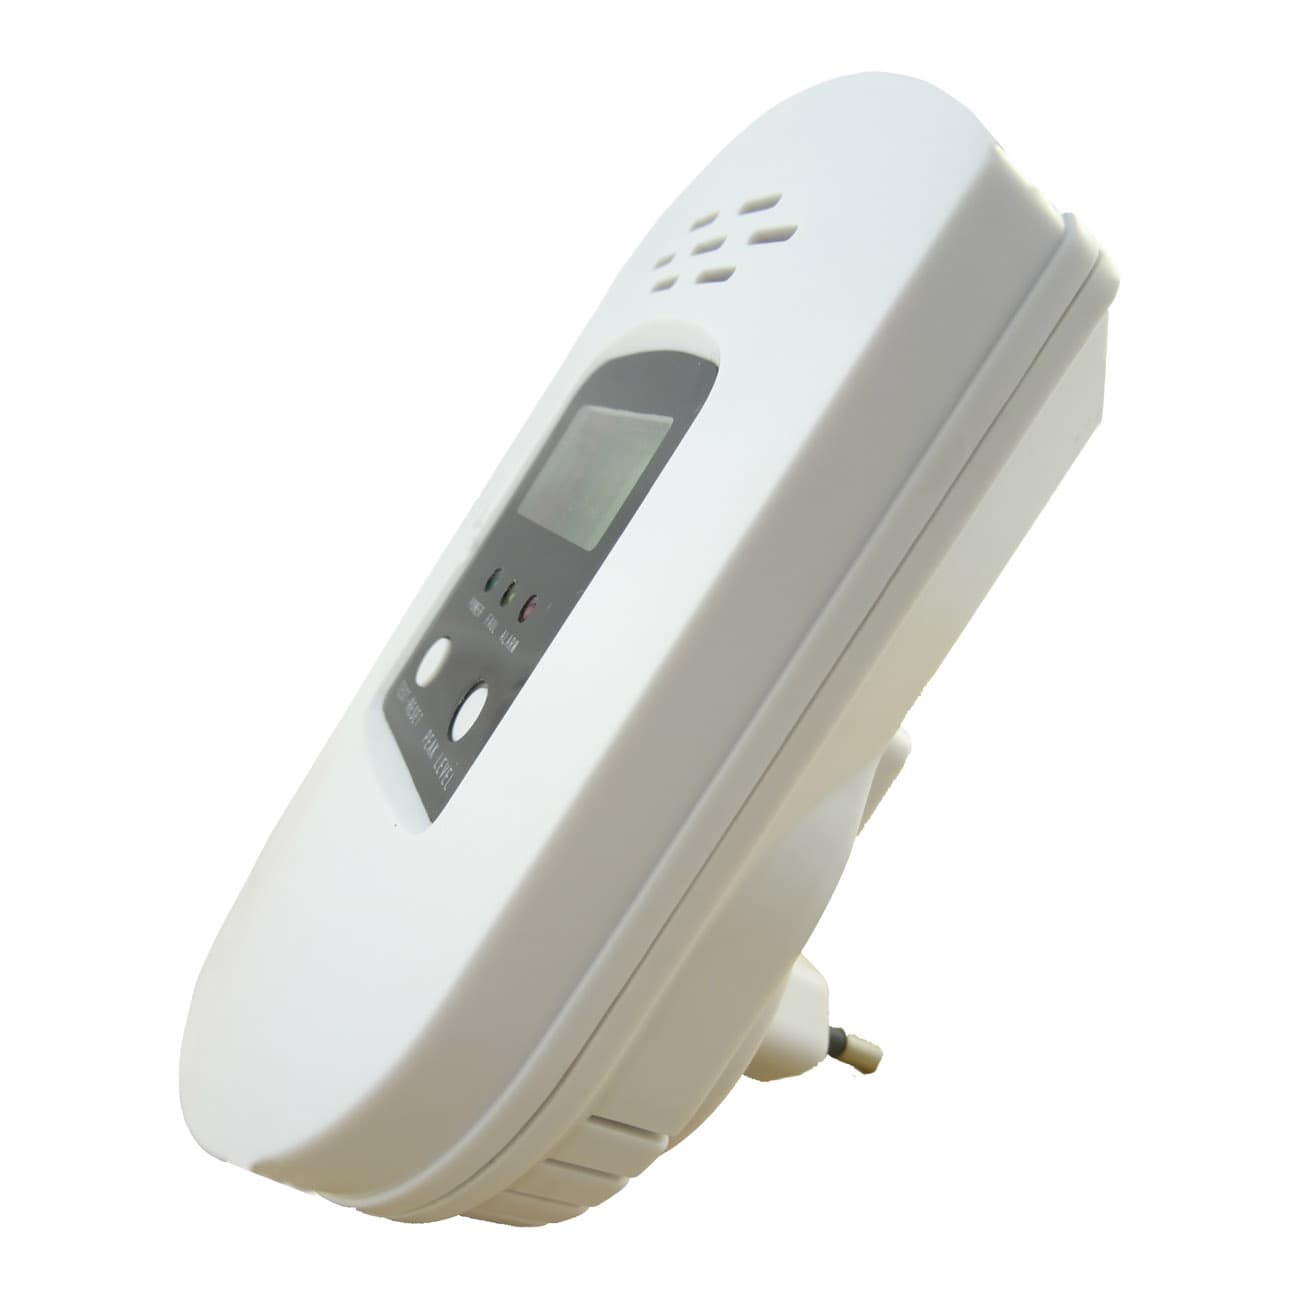 Household Gas Carbon Monoxide Leak Detector